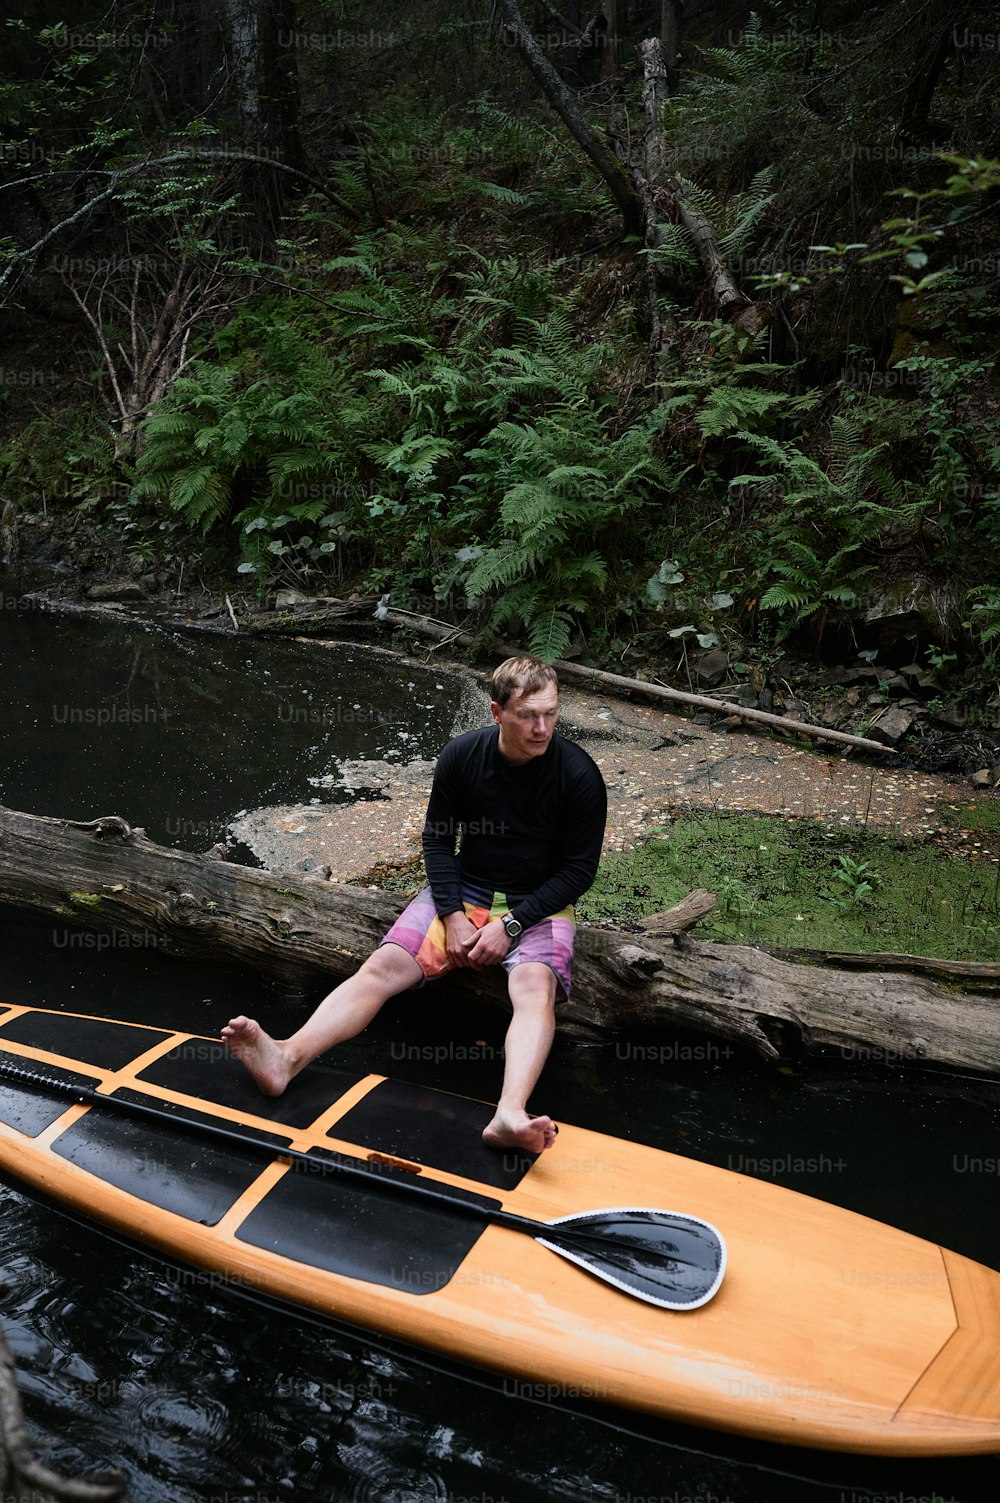 上の写真は、ボードの上でパドリングしながら休憩している男性の写真です。彼は荒れ狂う川岸に座っていて、足はサップボードの上に乗せられています